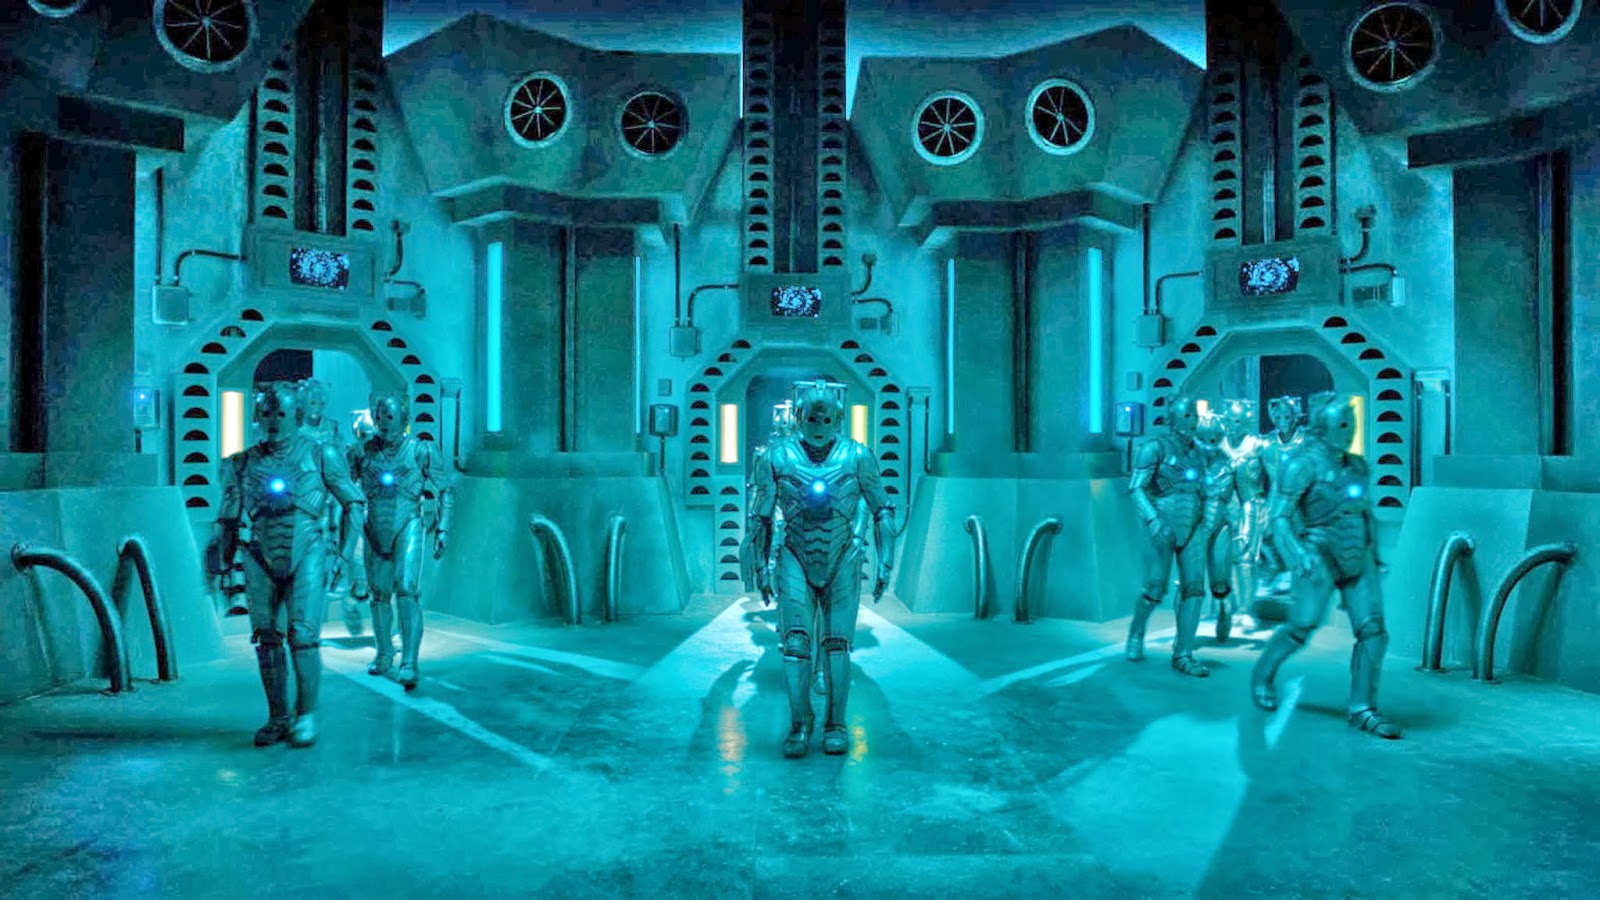 Cybermen Wallpaper When The Cyberman Shows Up In